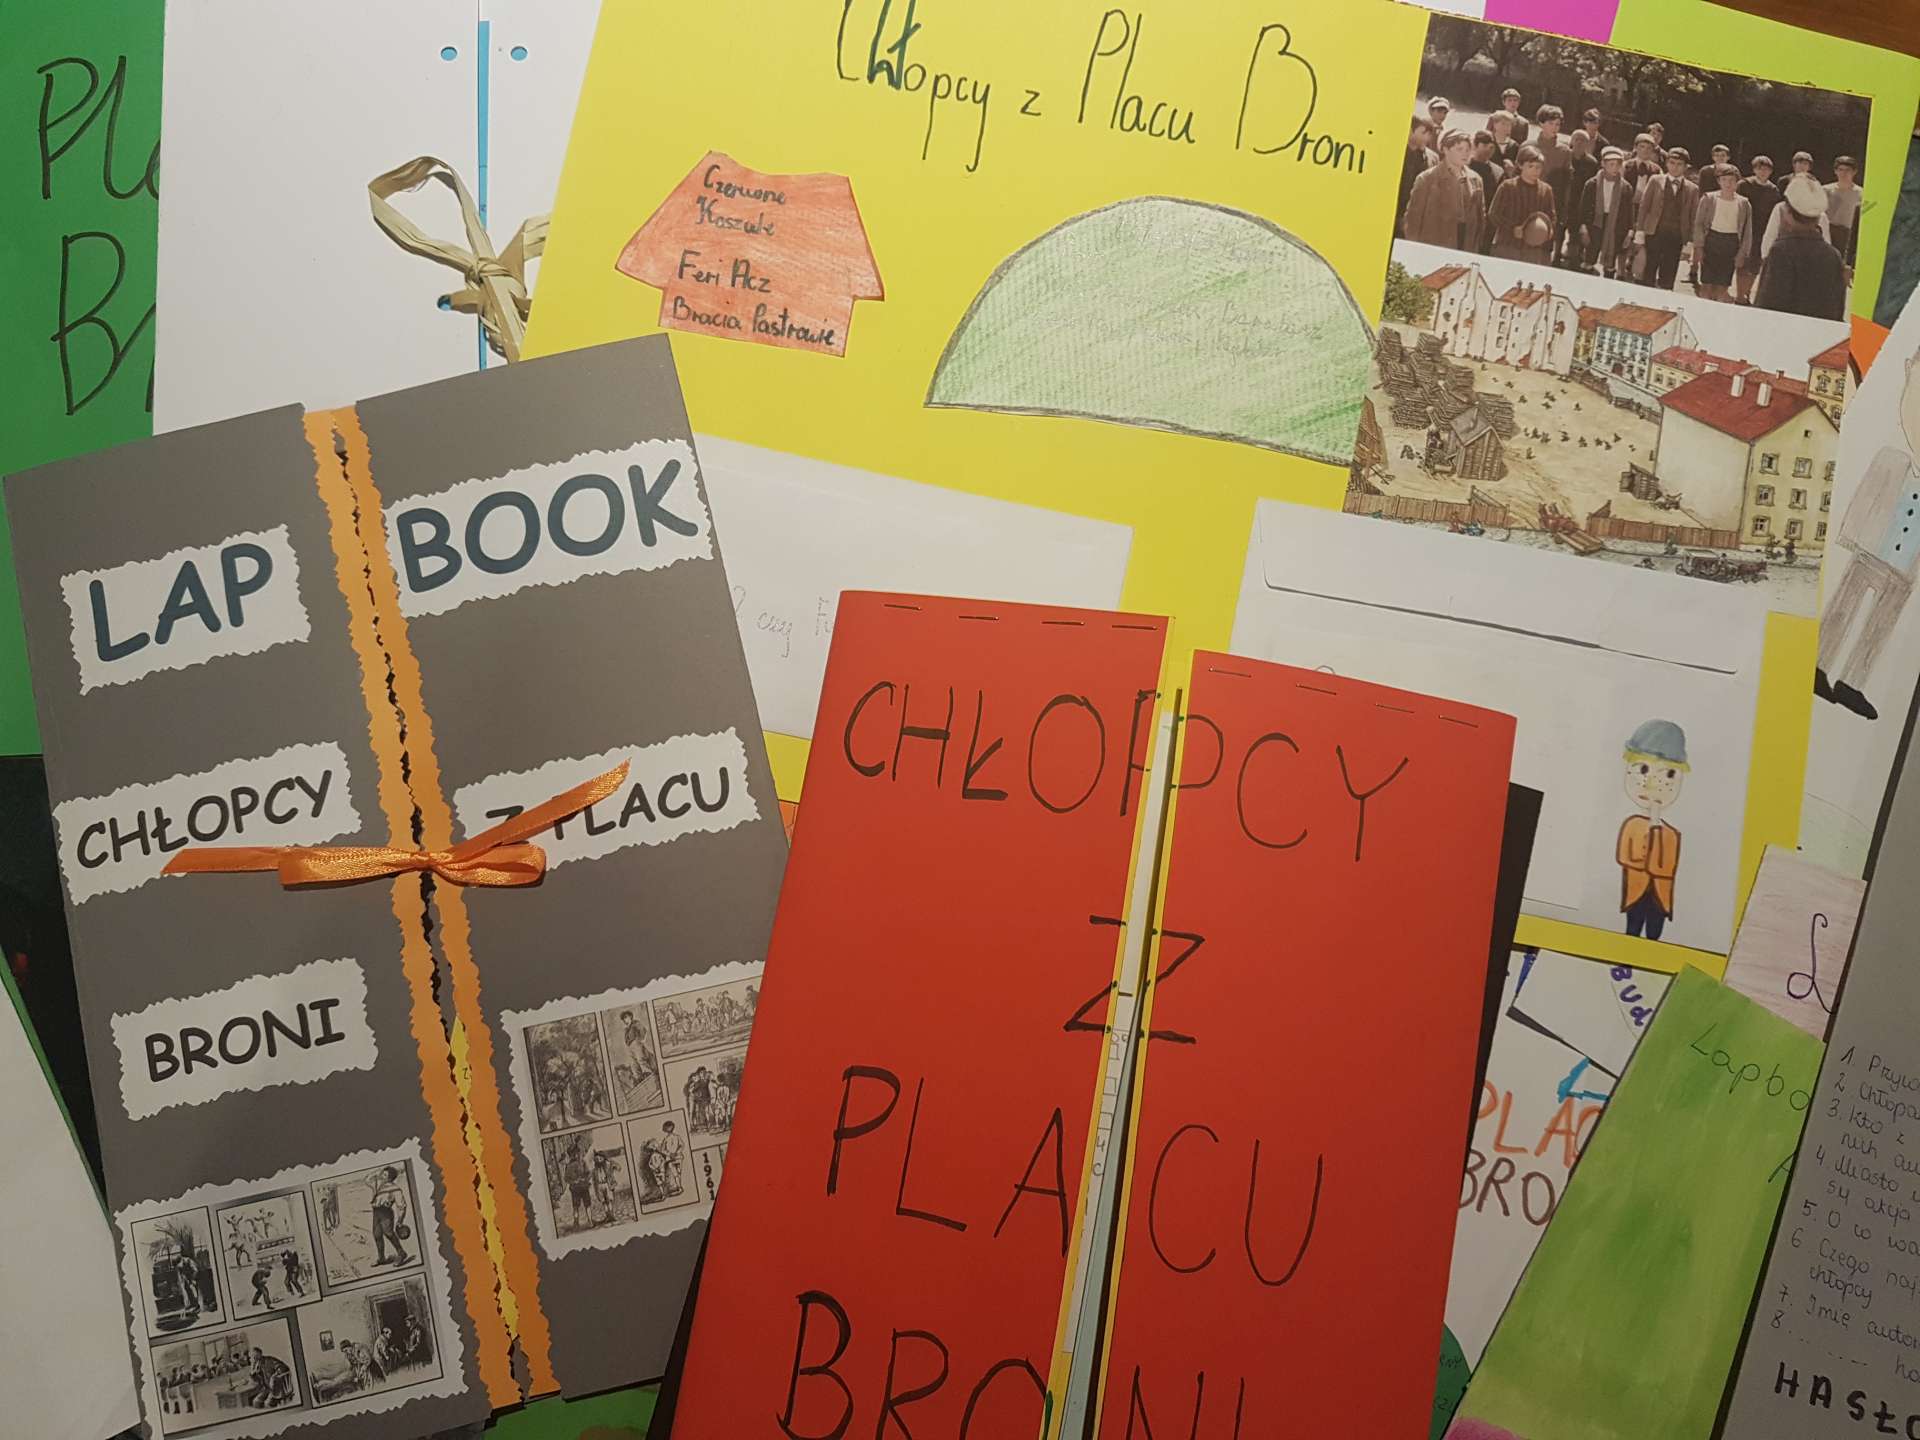 Lapbook Chłopcy Z Placu Broni Lektura może być inspiracją! - Szkoła Podstawowa w Tuliszkowie